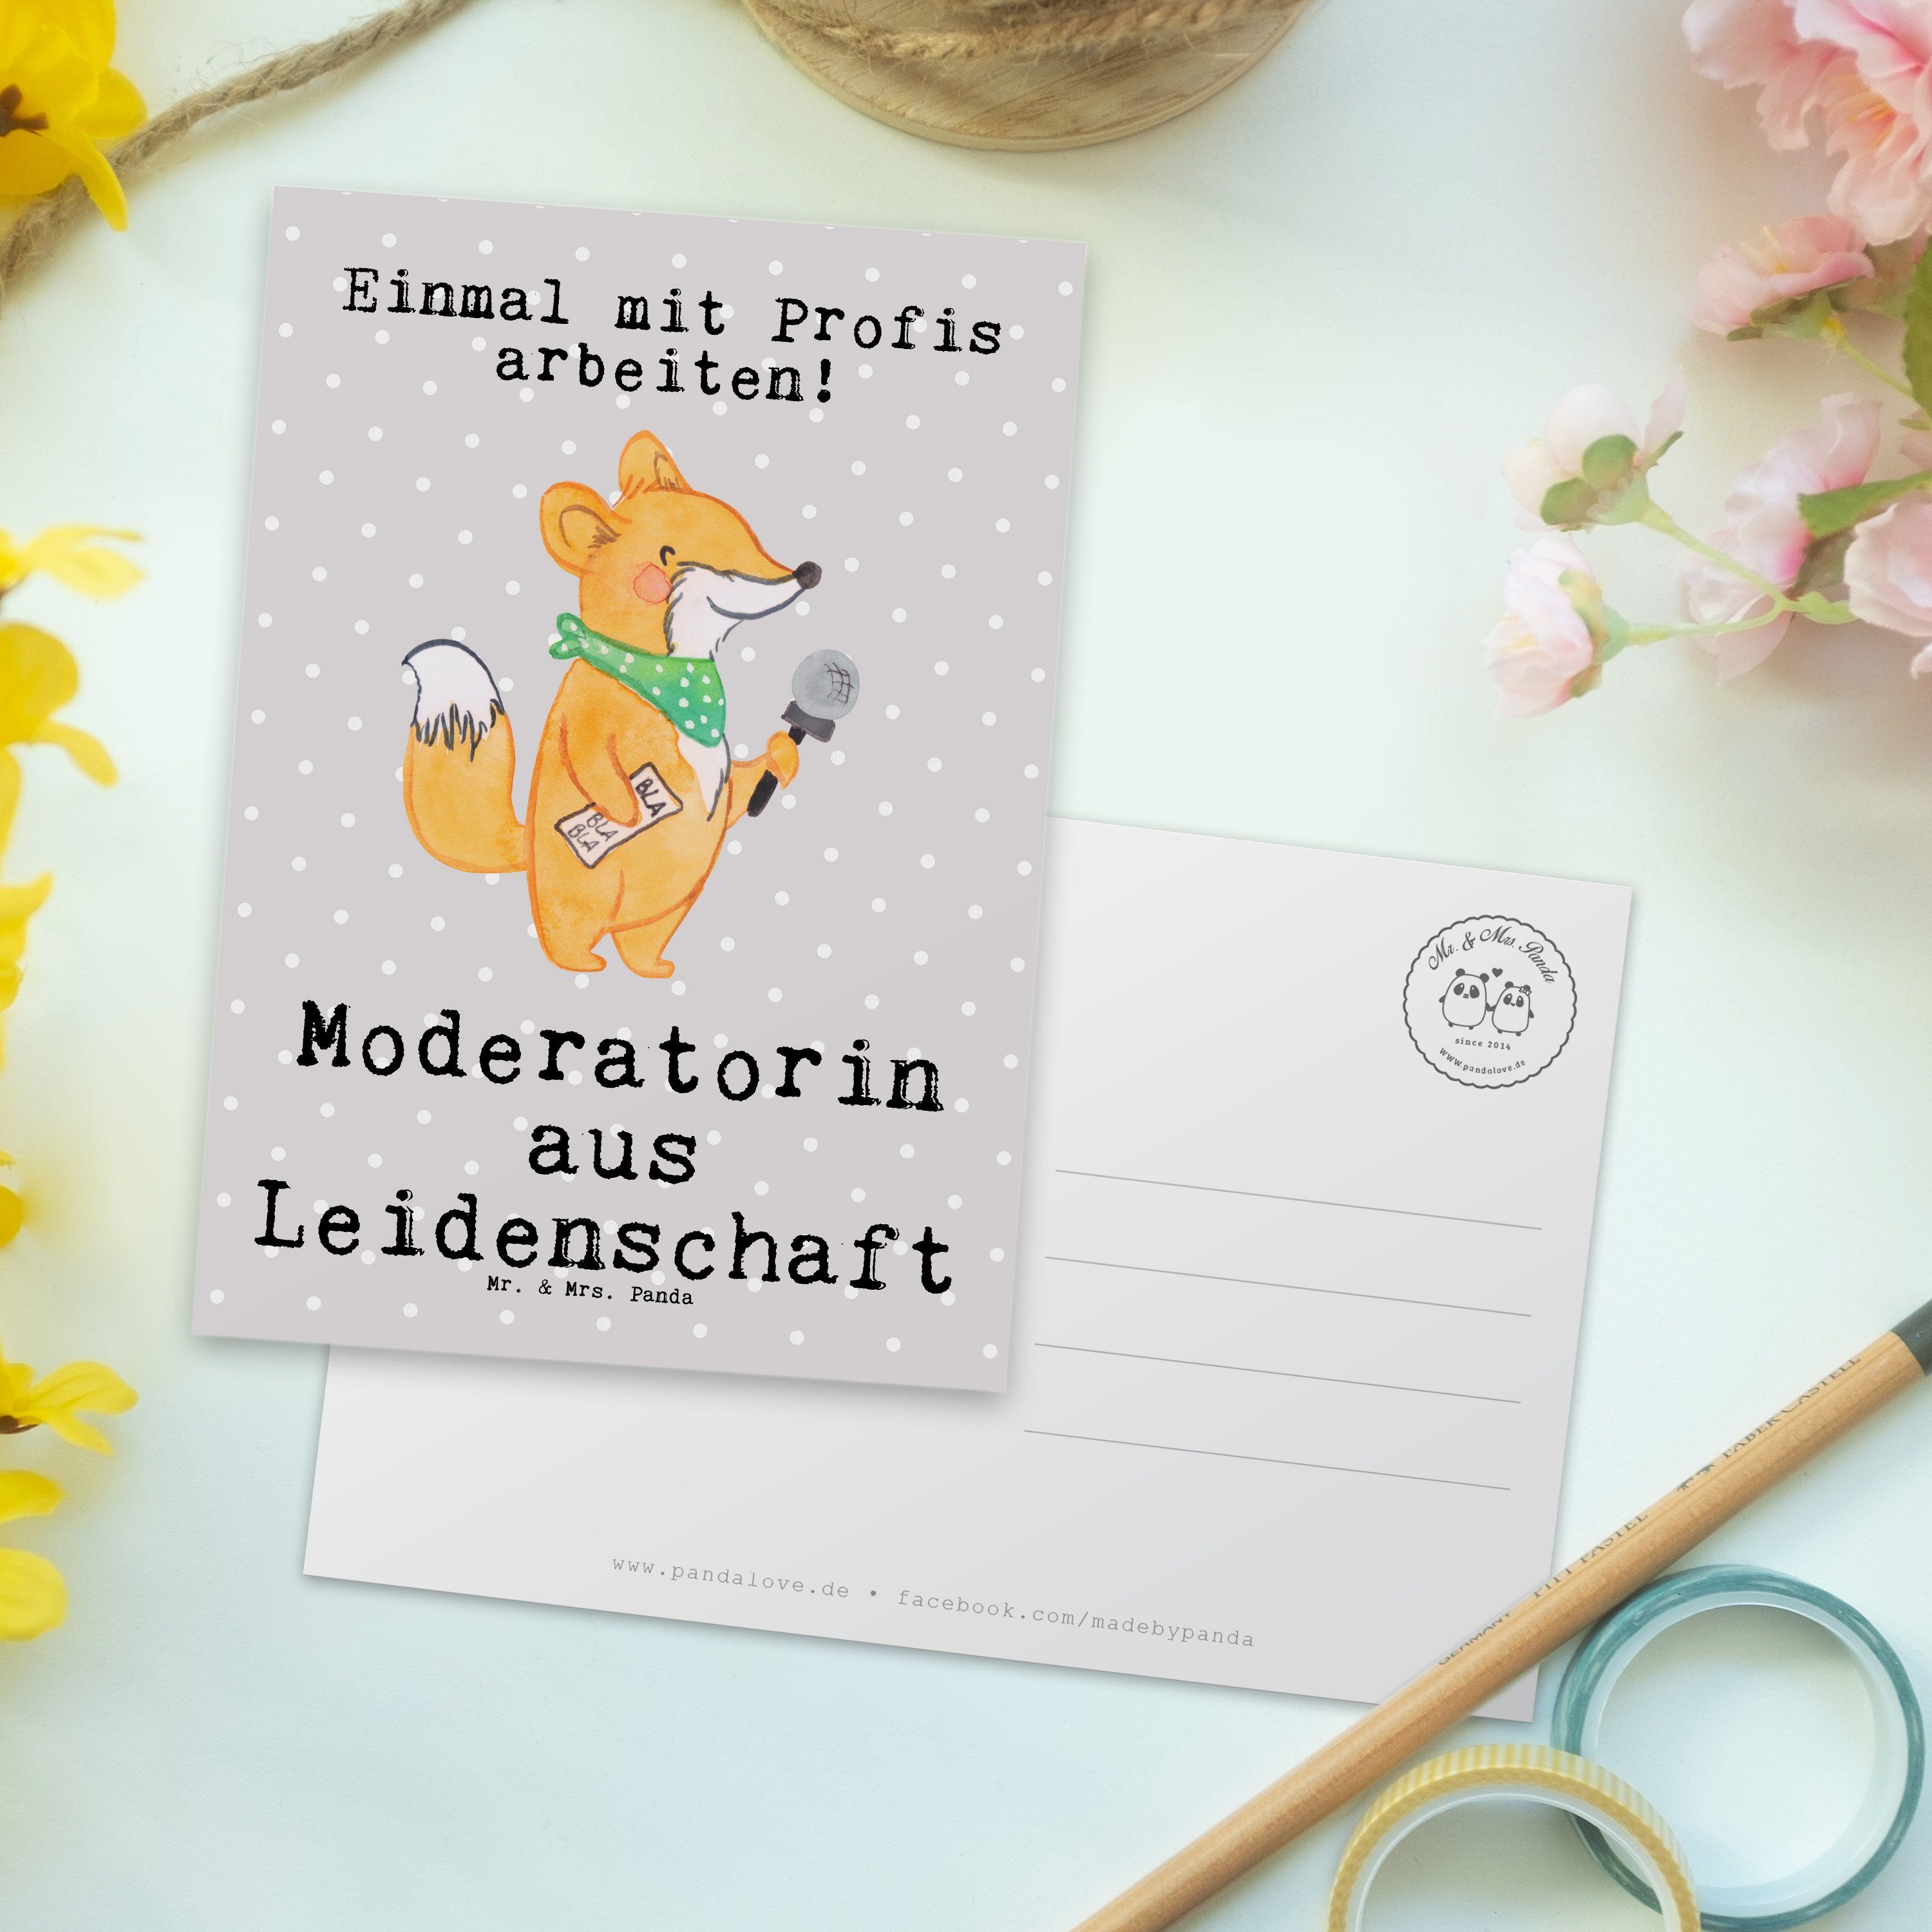 Leidenschaft Mr. - Mrs. & Moderatorin Geschenk, Grau Panda aus Pastell - Postkarte Arbeitskolleg